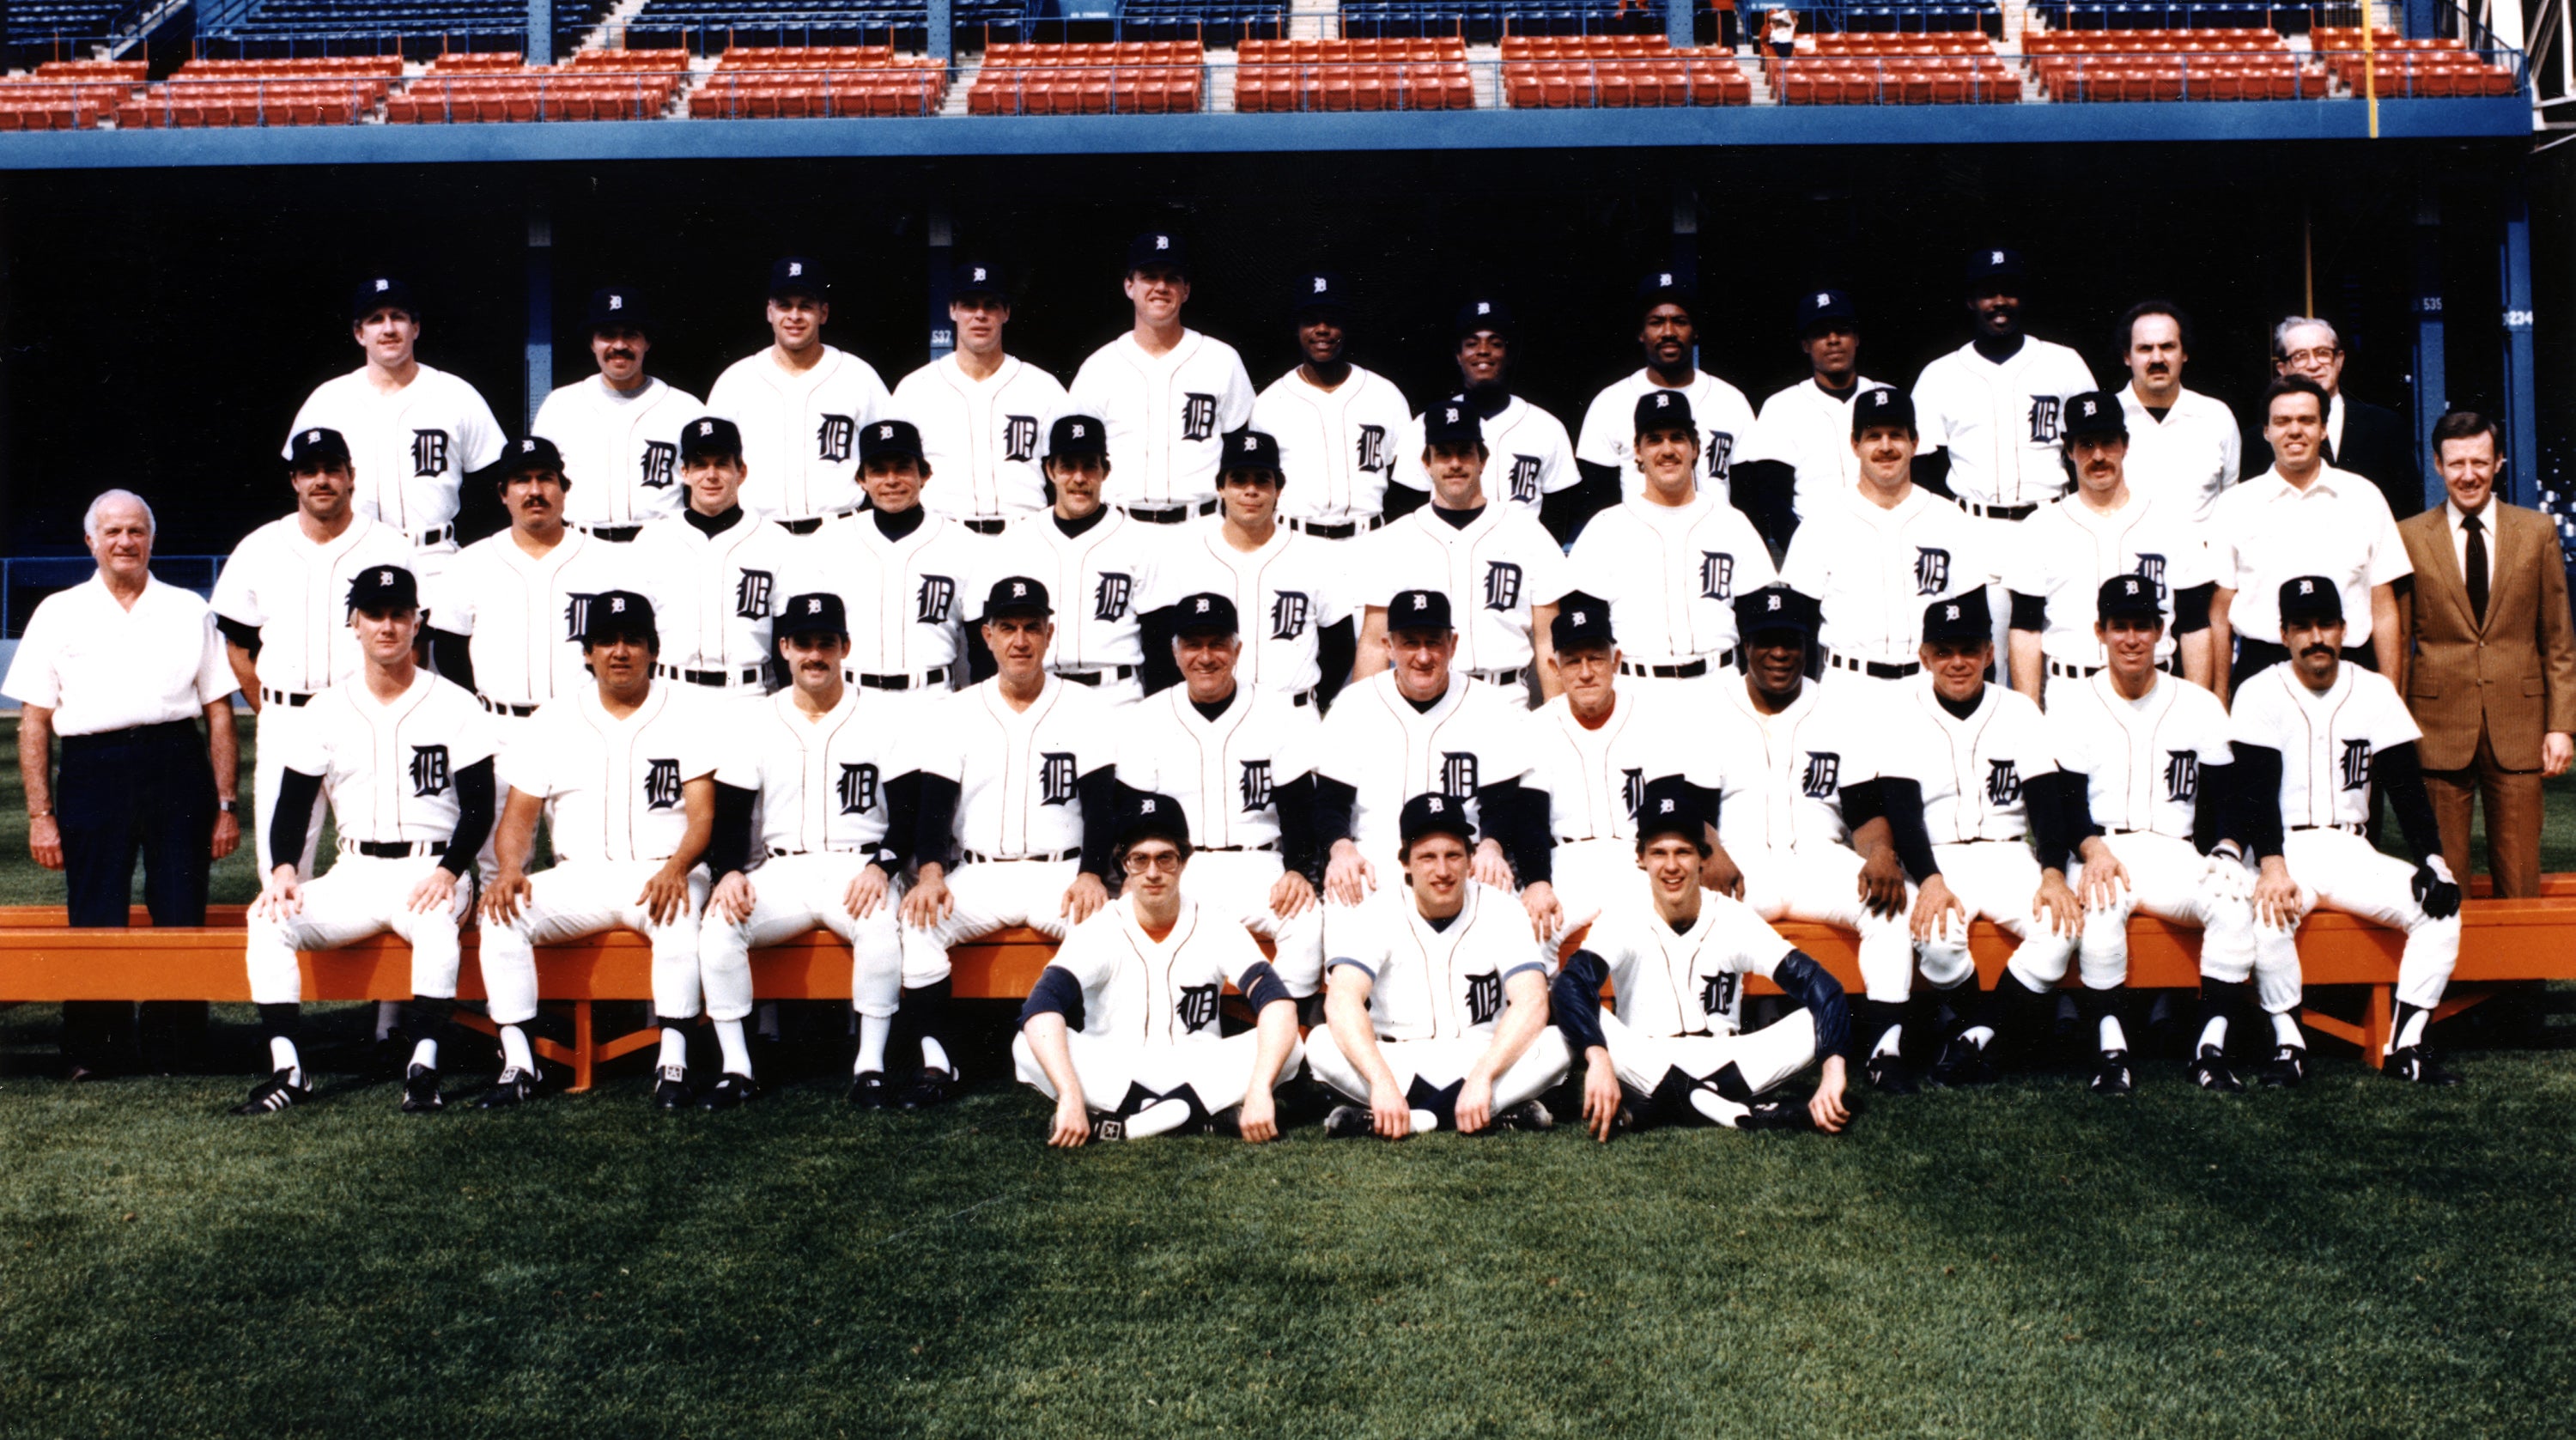 1984 Hall of Fame Game